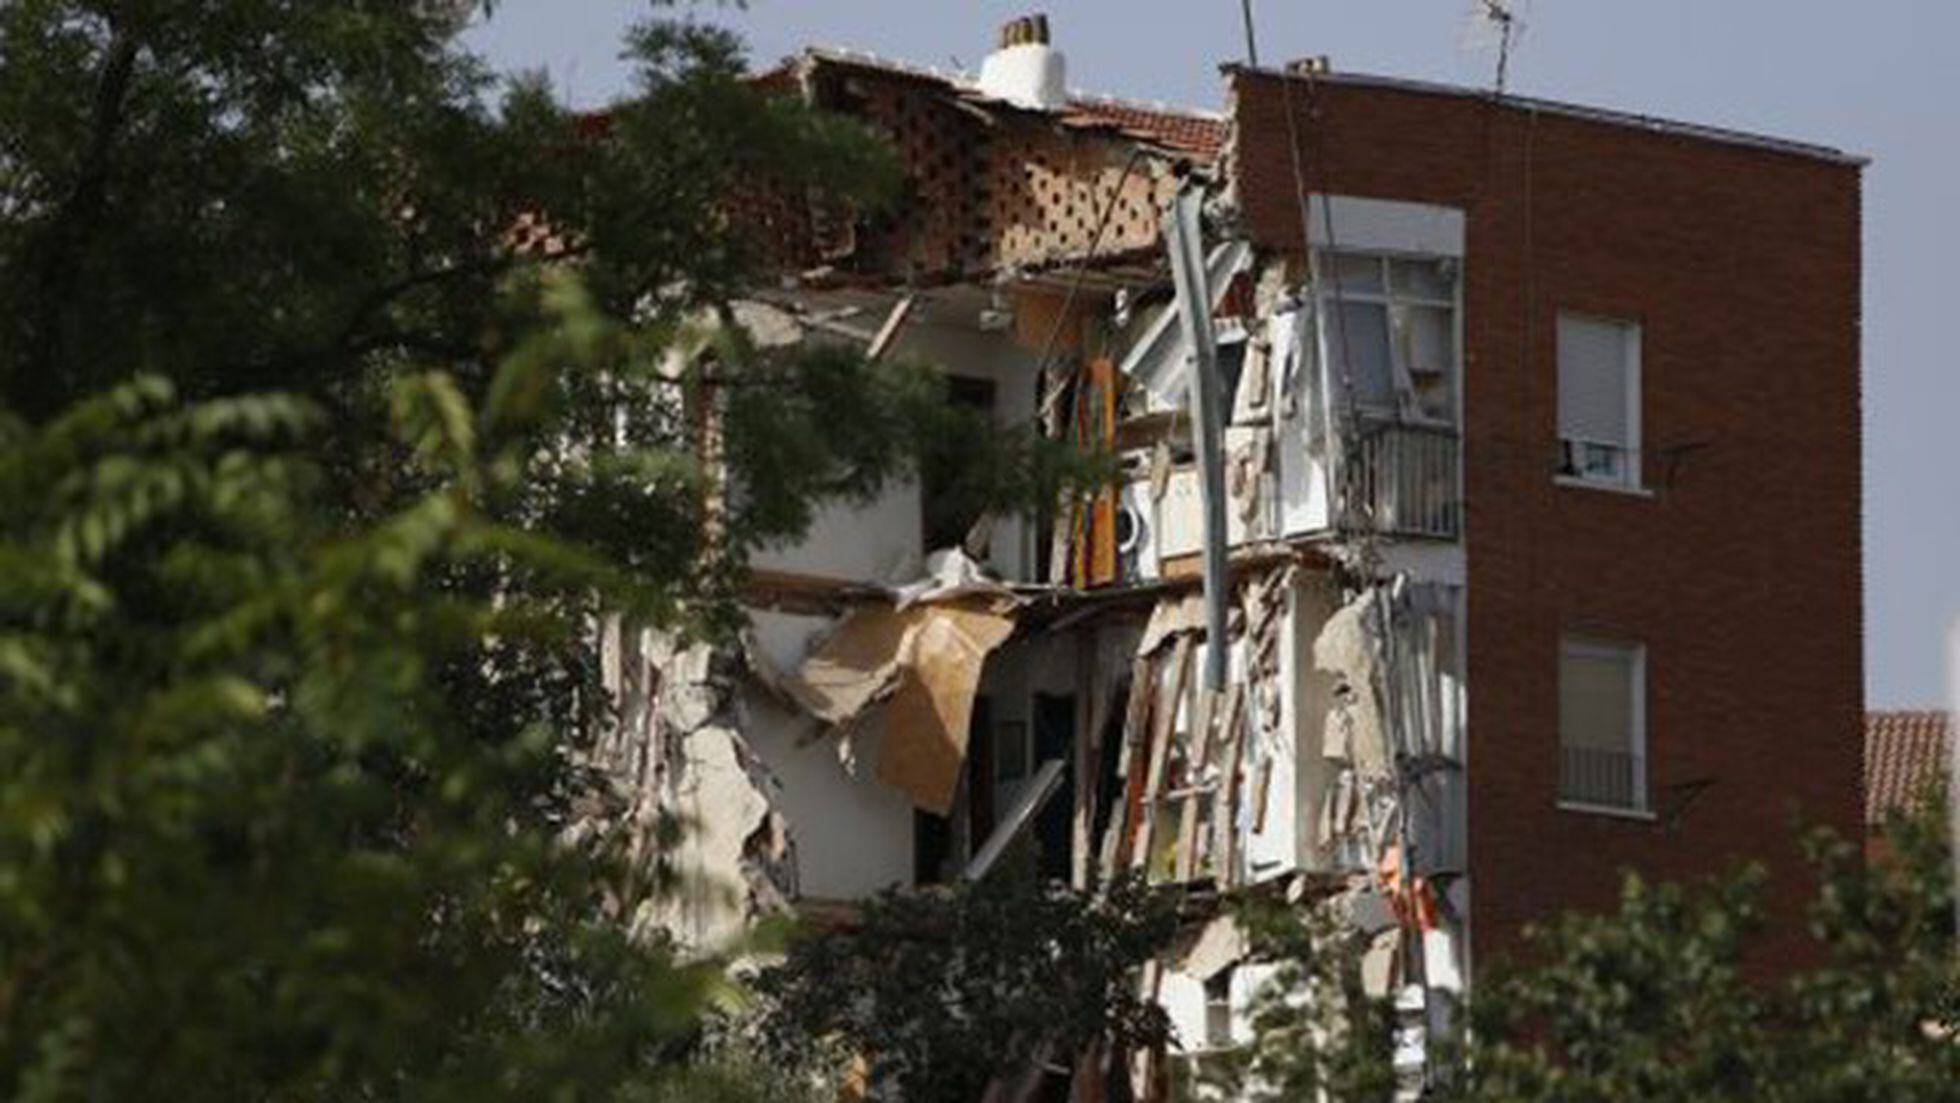 Derrumbe en Madrid: El edificio desplomado pasó la inspección en 2012 |  Madrid | EL PAÍS